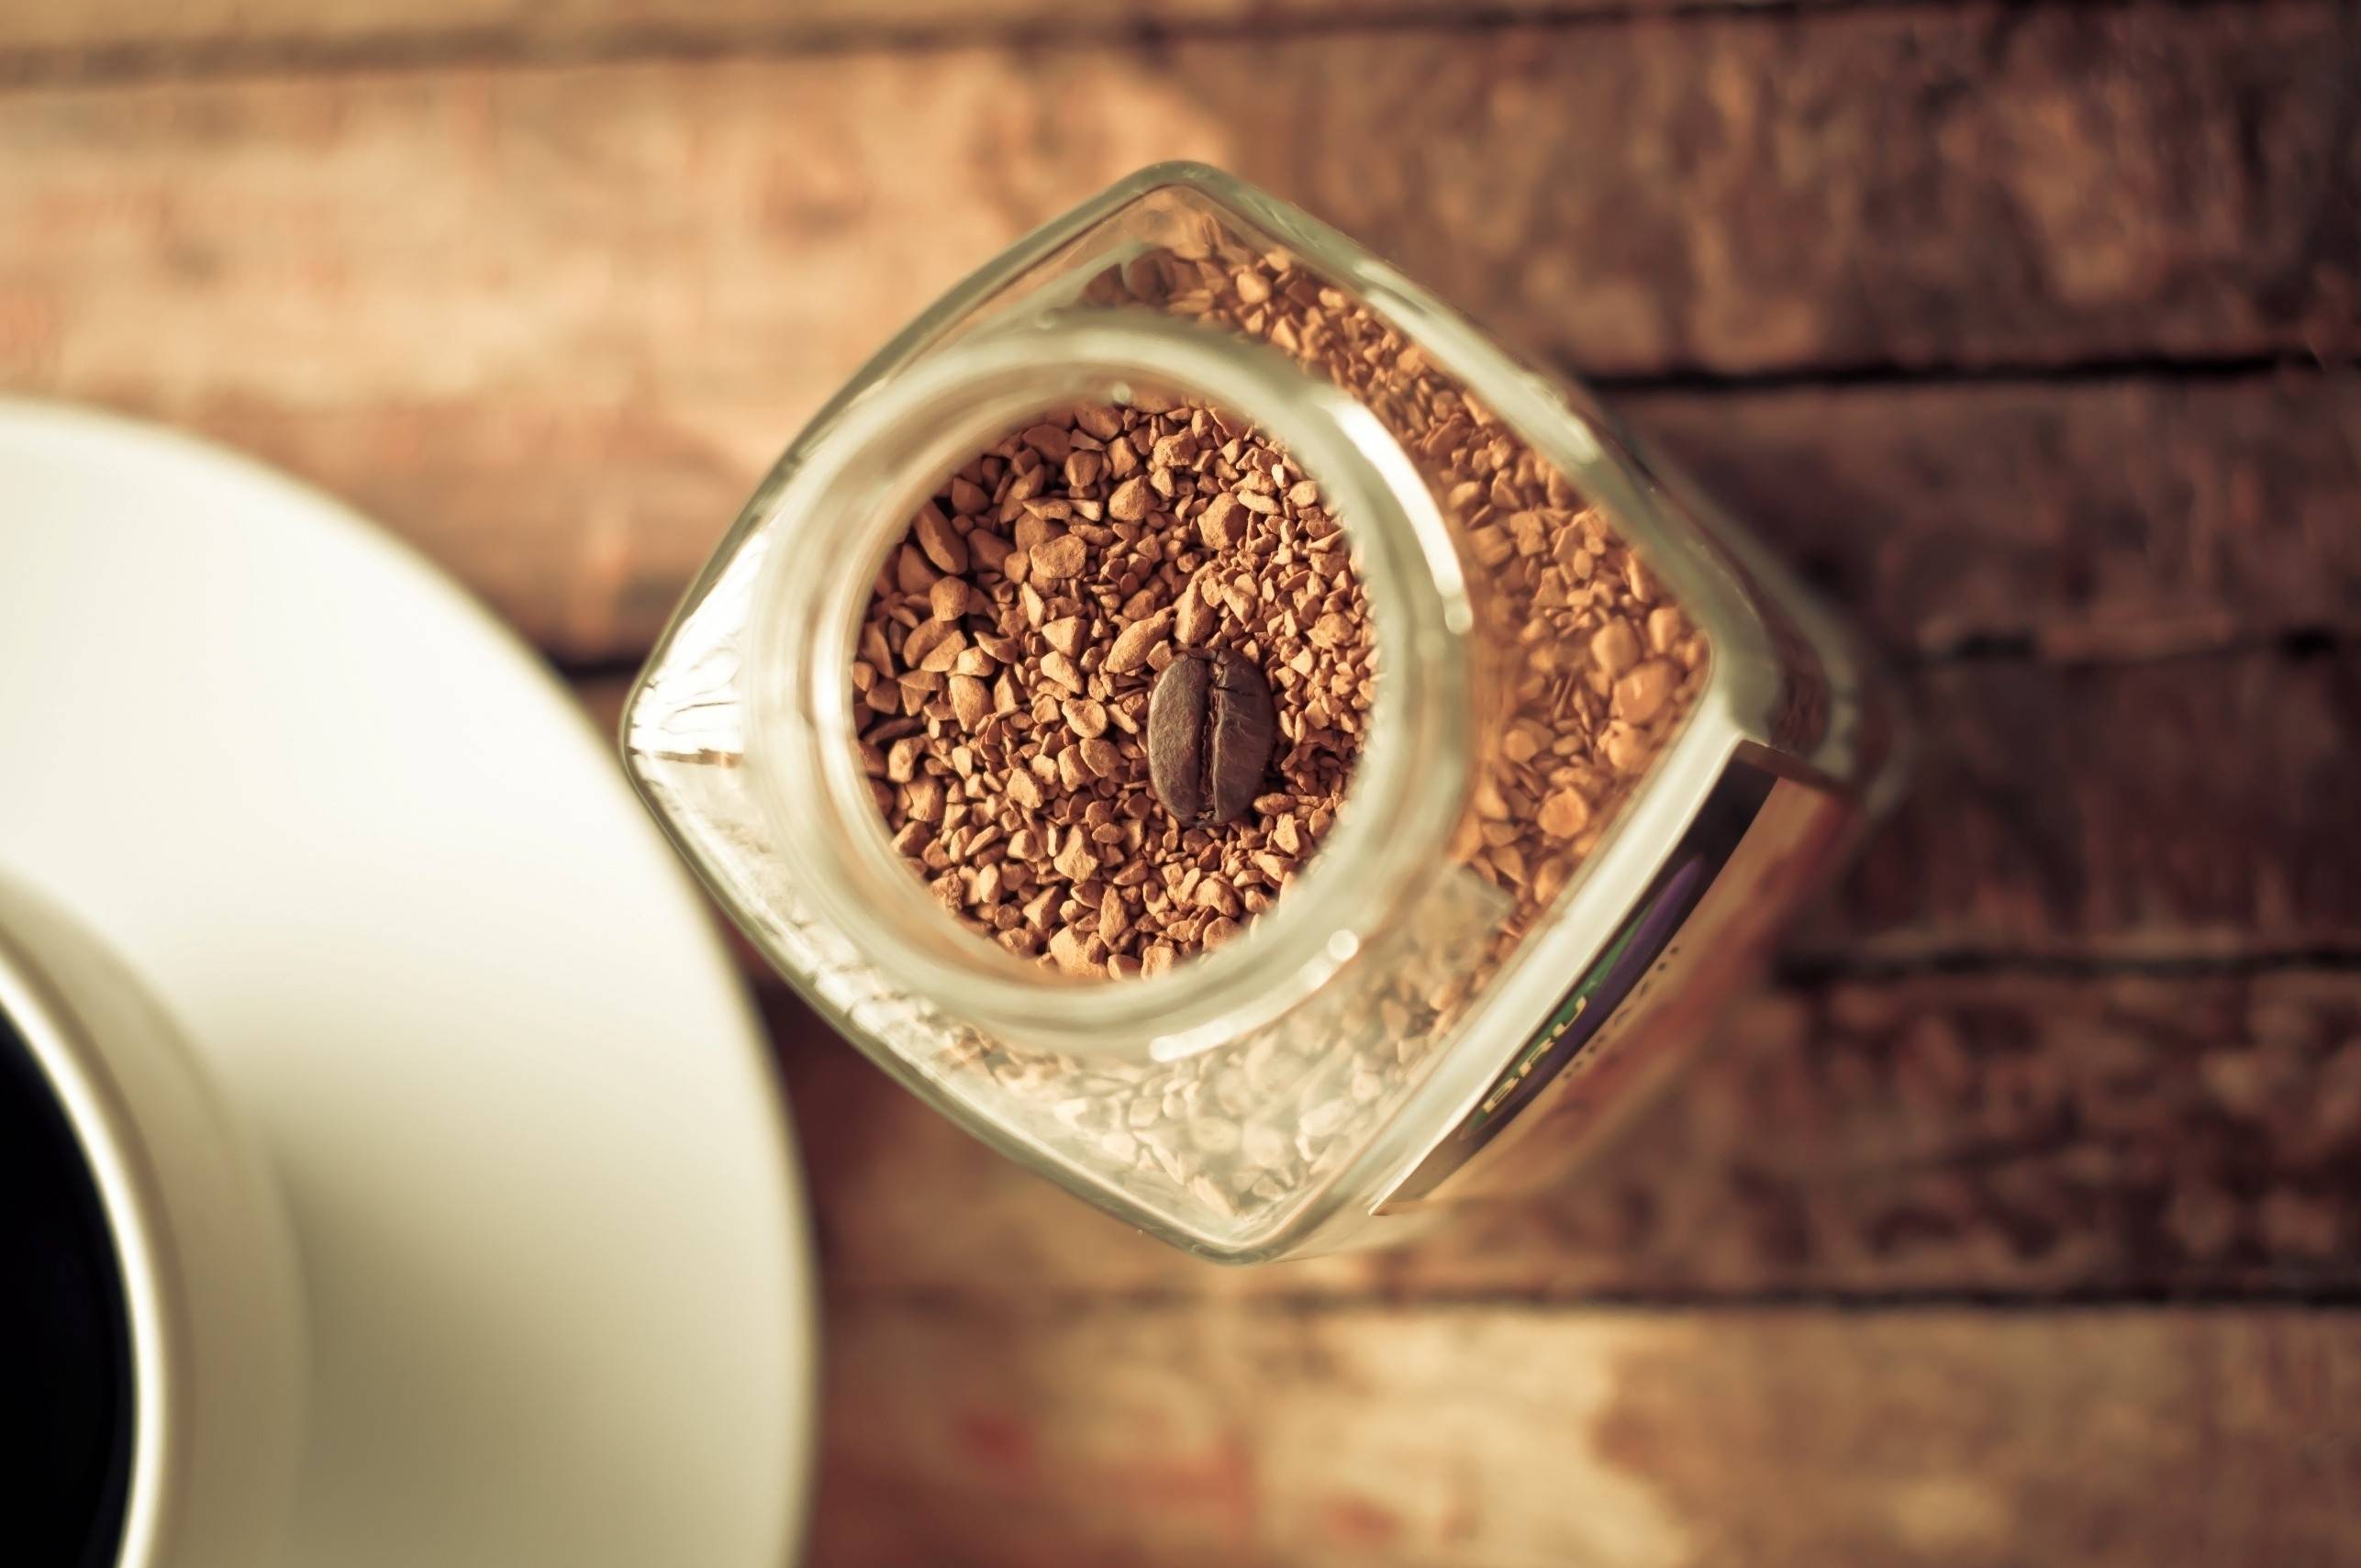 Как делают сублимированный кофе. вреден ли сублимированный кофе? технология изготовления сублимированного кофе.